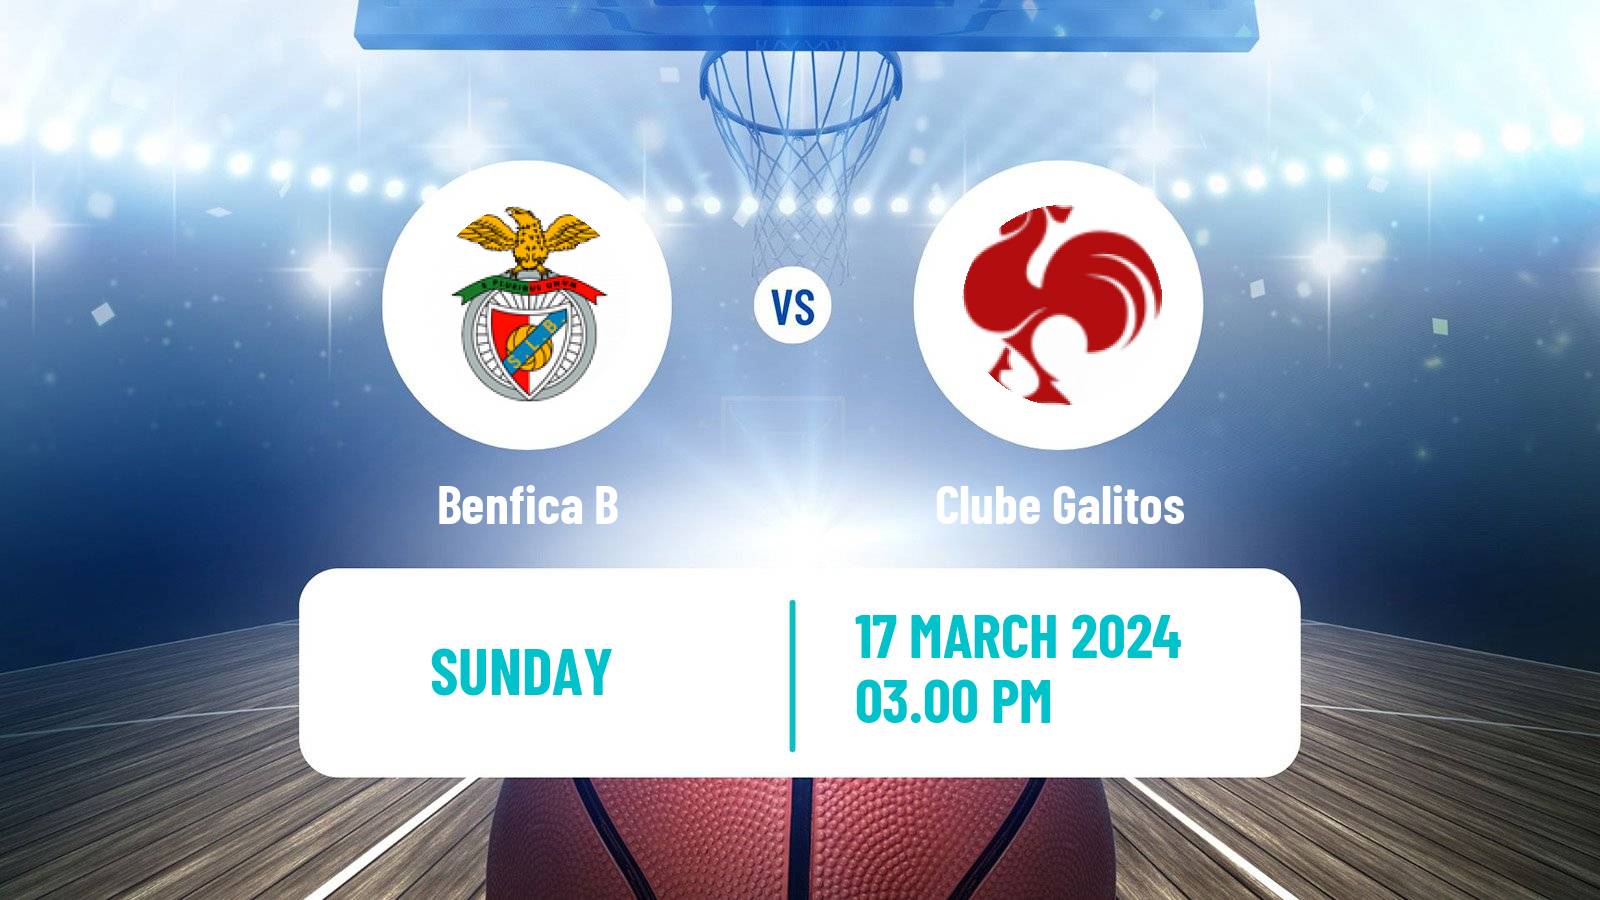 Basketball Portuguese Proliga Basketball Benfica B - Clube Galitos